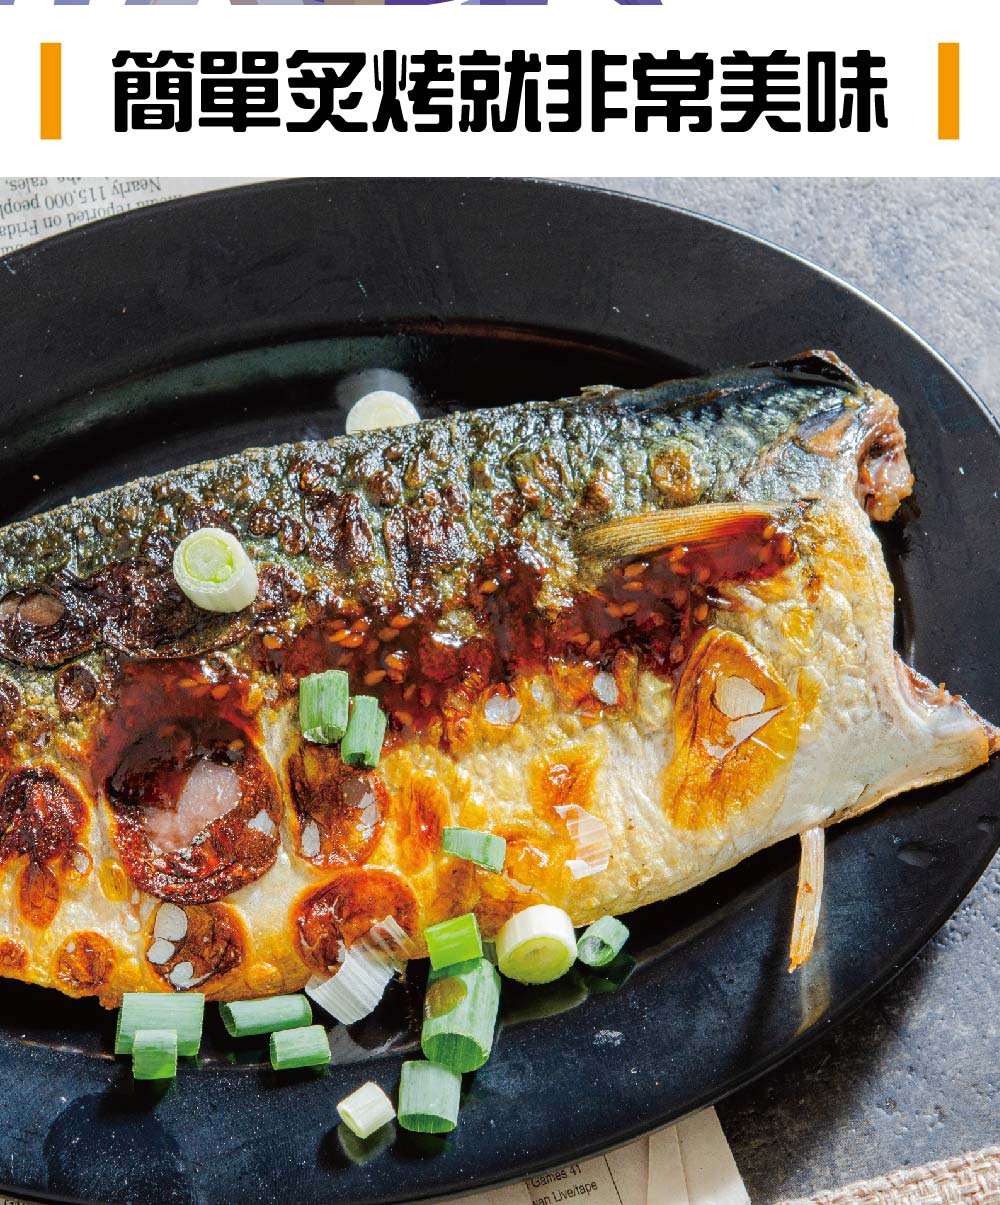       【鮮綠生活】季節限定台灣鯖魚(200g±10%/片 共12包)